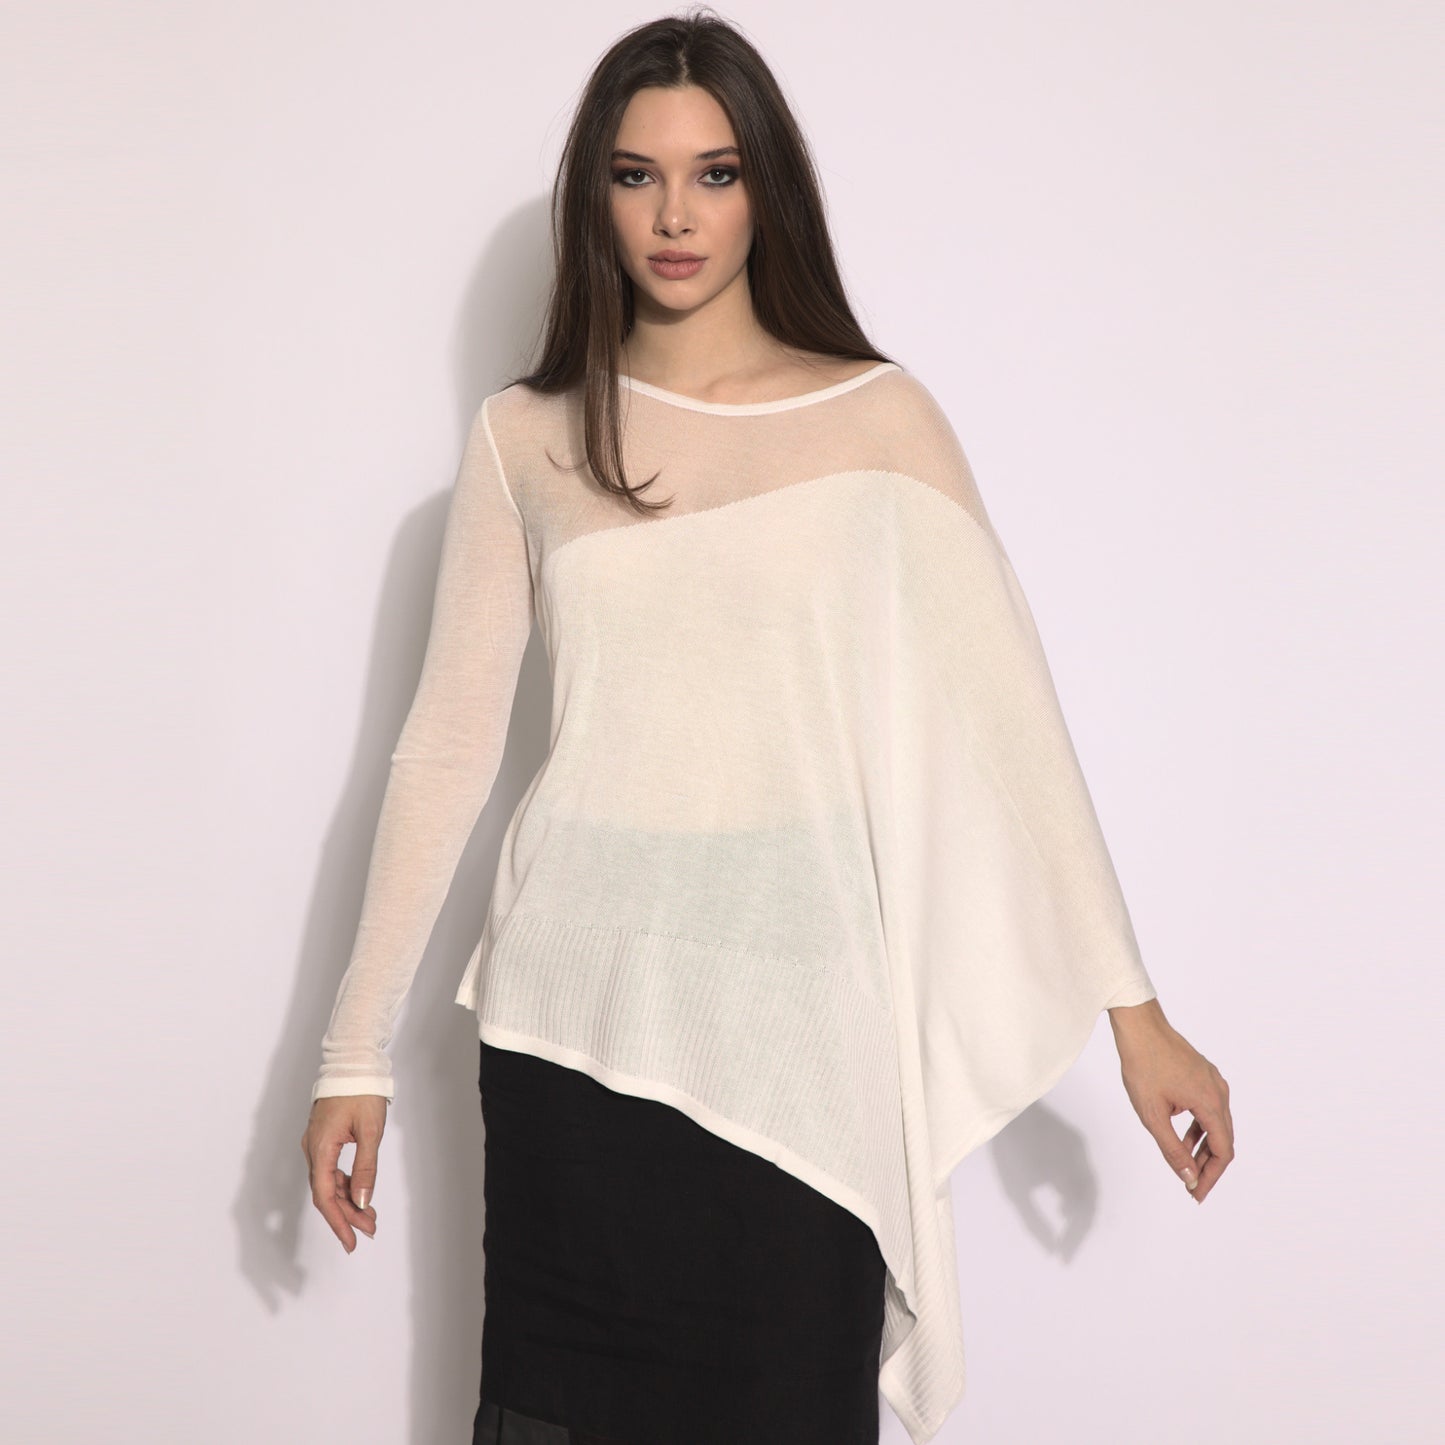 Kaya - Blusa de tricot assimétrica na cor off-white com transparencia